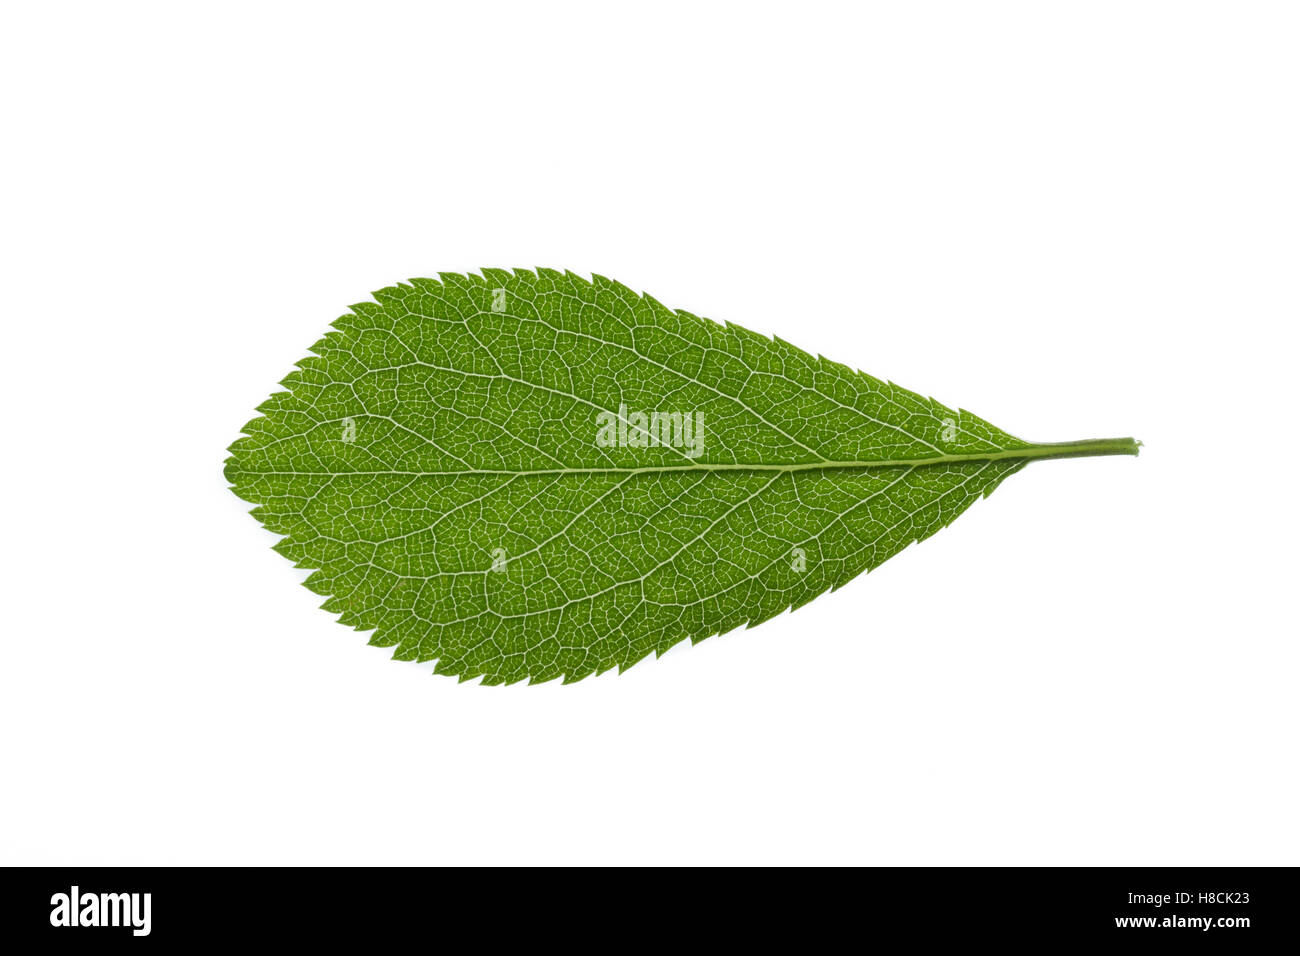 Gewöhnliche Schlehe, Schwarzdorn, Prunus spinosa, Blackthorn, Sloe, Epine noire, Prunellier. Blatt, Blätter, leaf, leaves Stock Photo